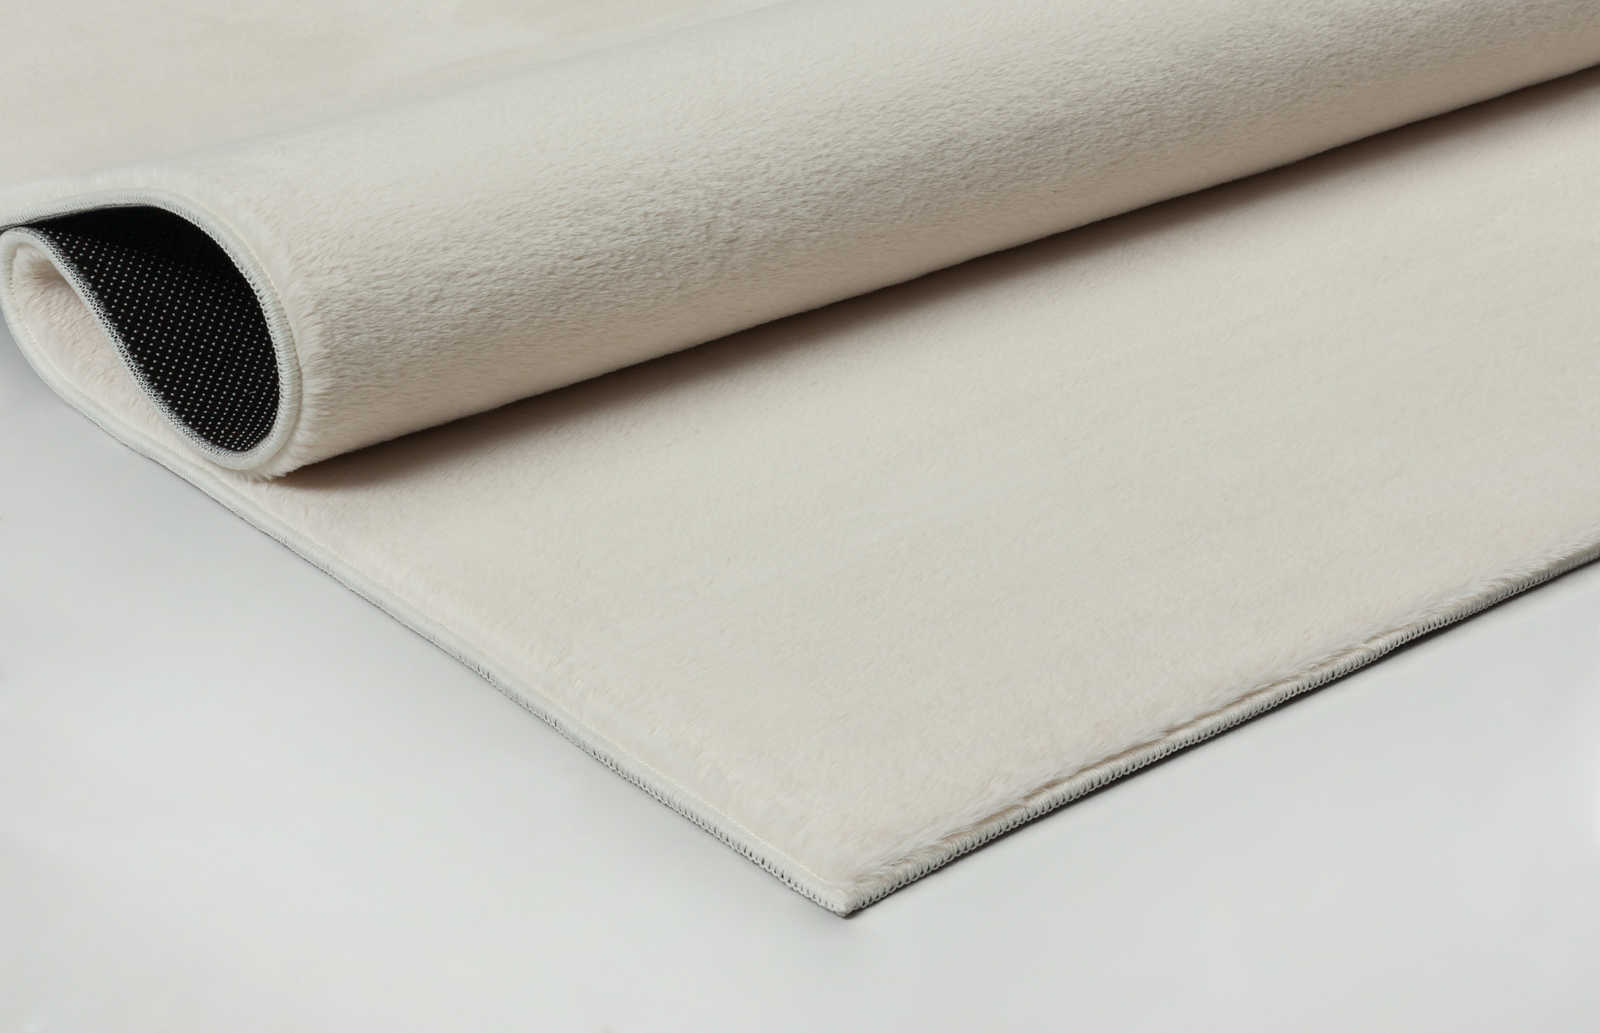             Soft pile carpet in cream - 100 x 50 cm
        